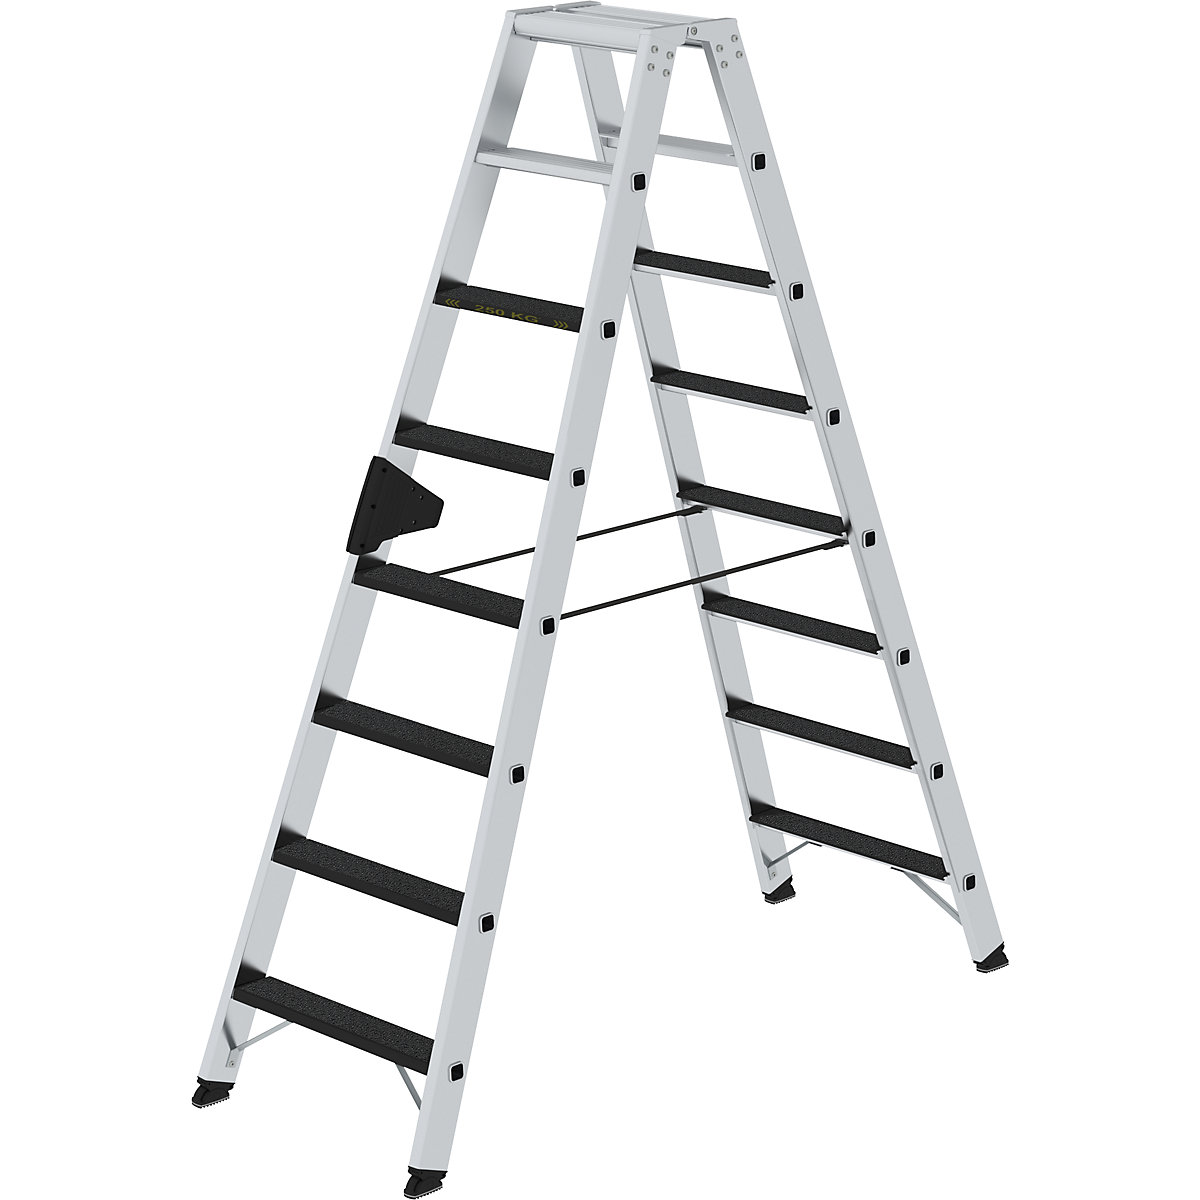 MUNK Stufen-Stehleiter CLIP-STEP, beidseitig begehbar, rutschhemmend R13, Schwerlast, 2 x 8 Stufen